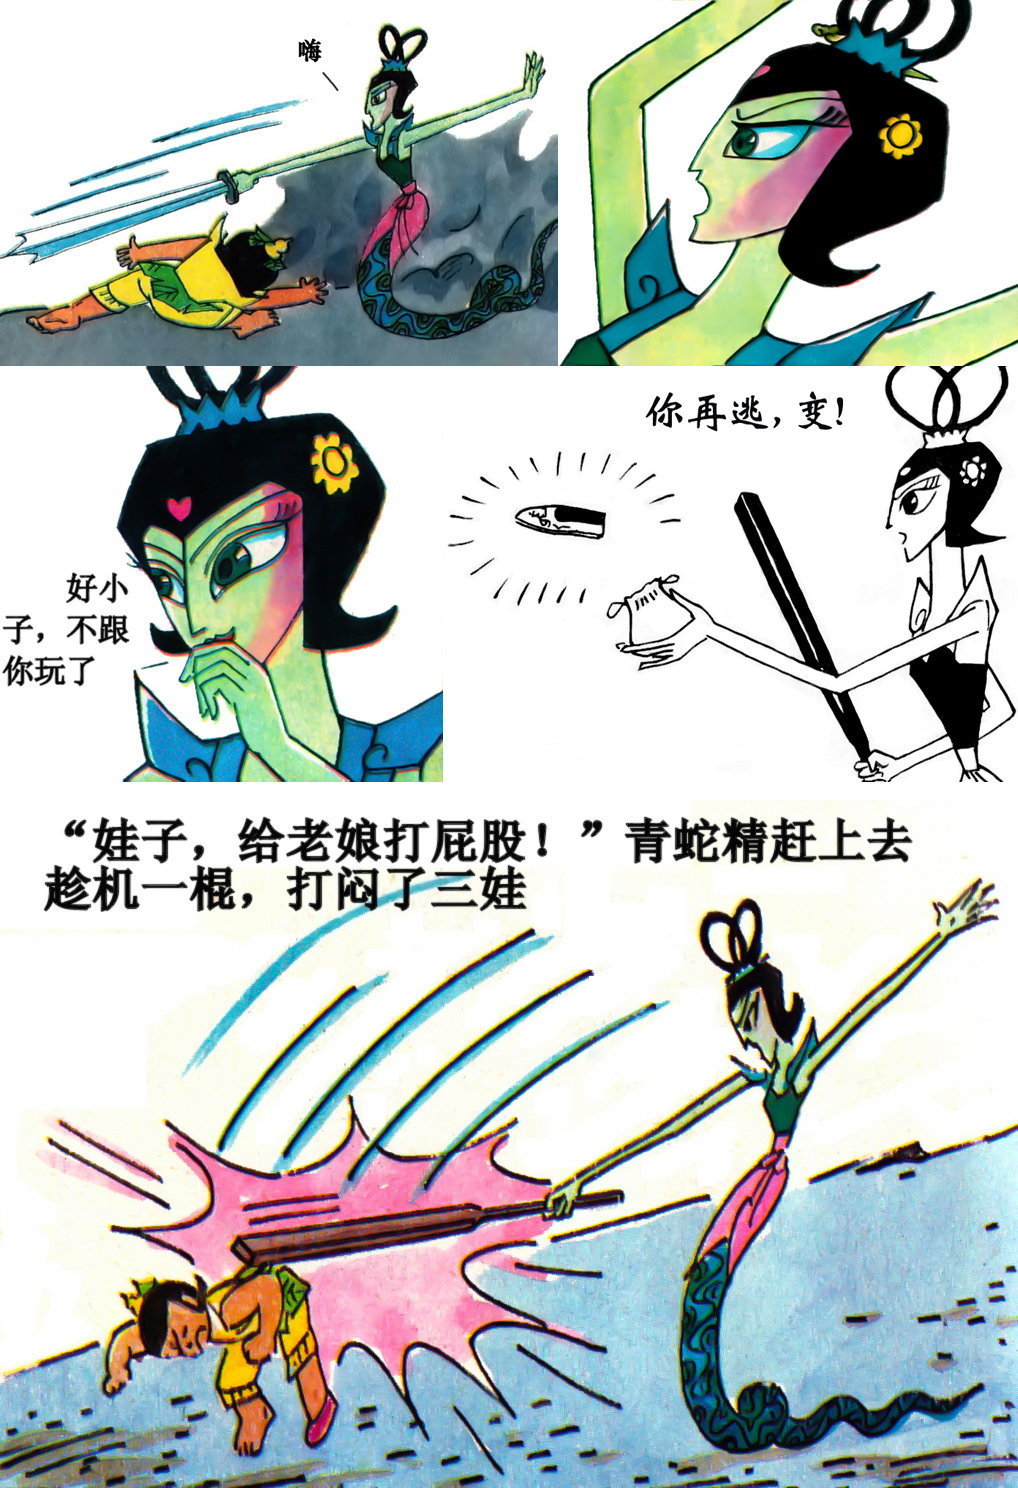 青蛇精 - 国产动画片《葫芦小金刚》中的大反派